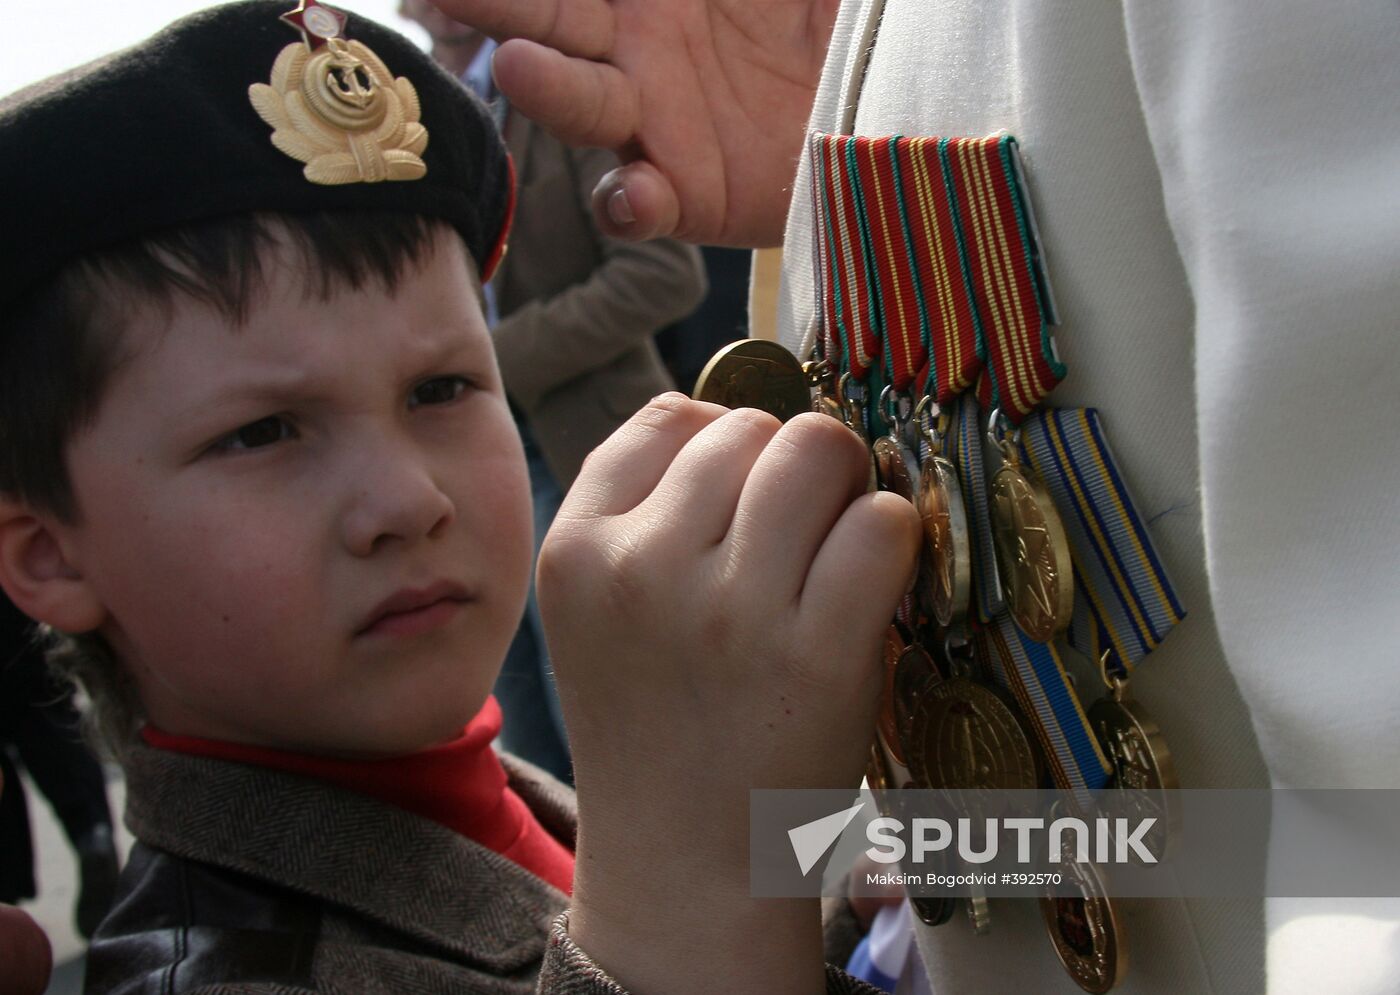 Victory Day festivities in Kazan